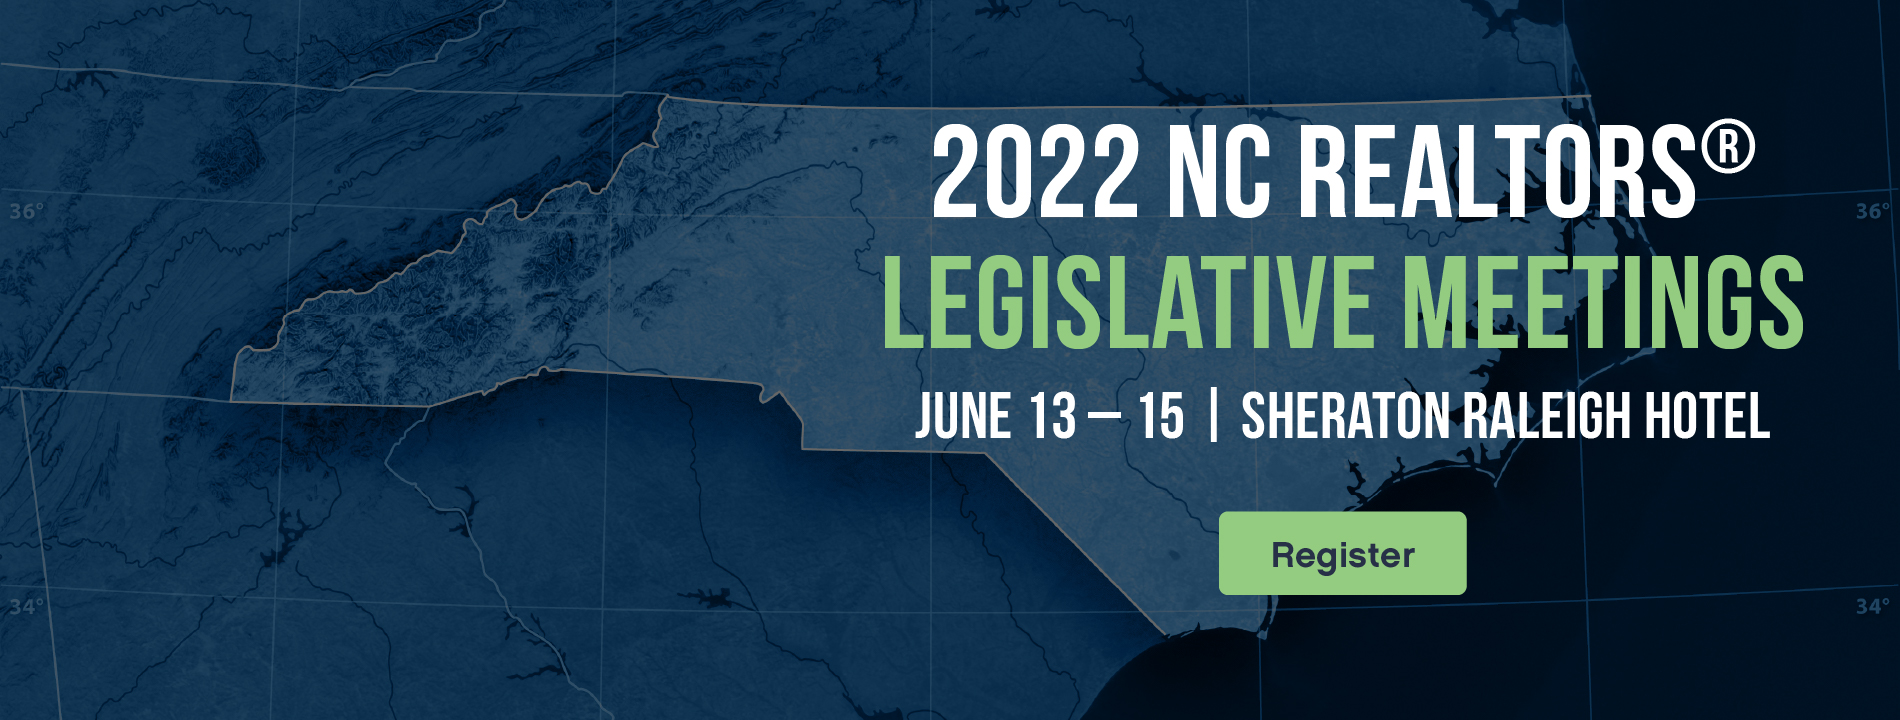 2022 Legislative Meetings Website Slider